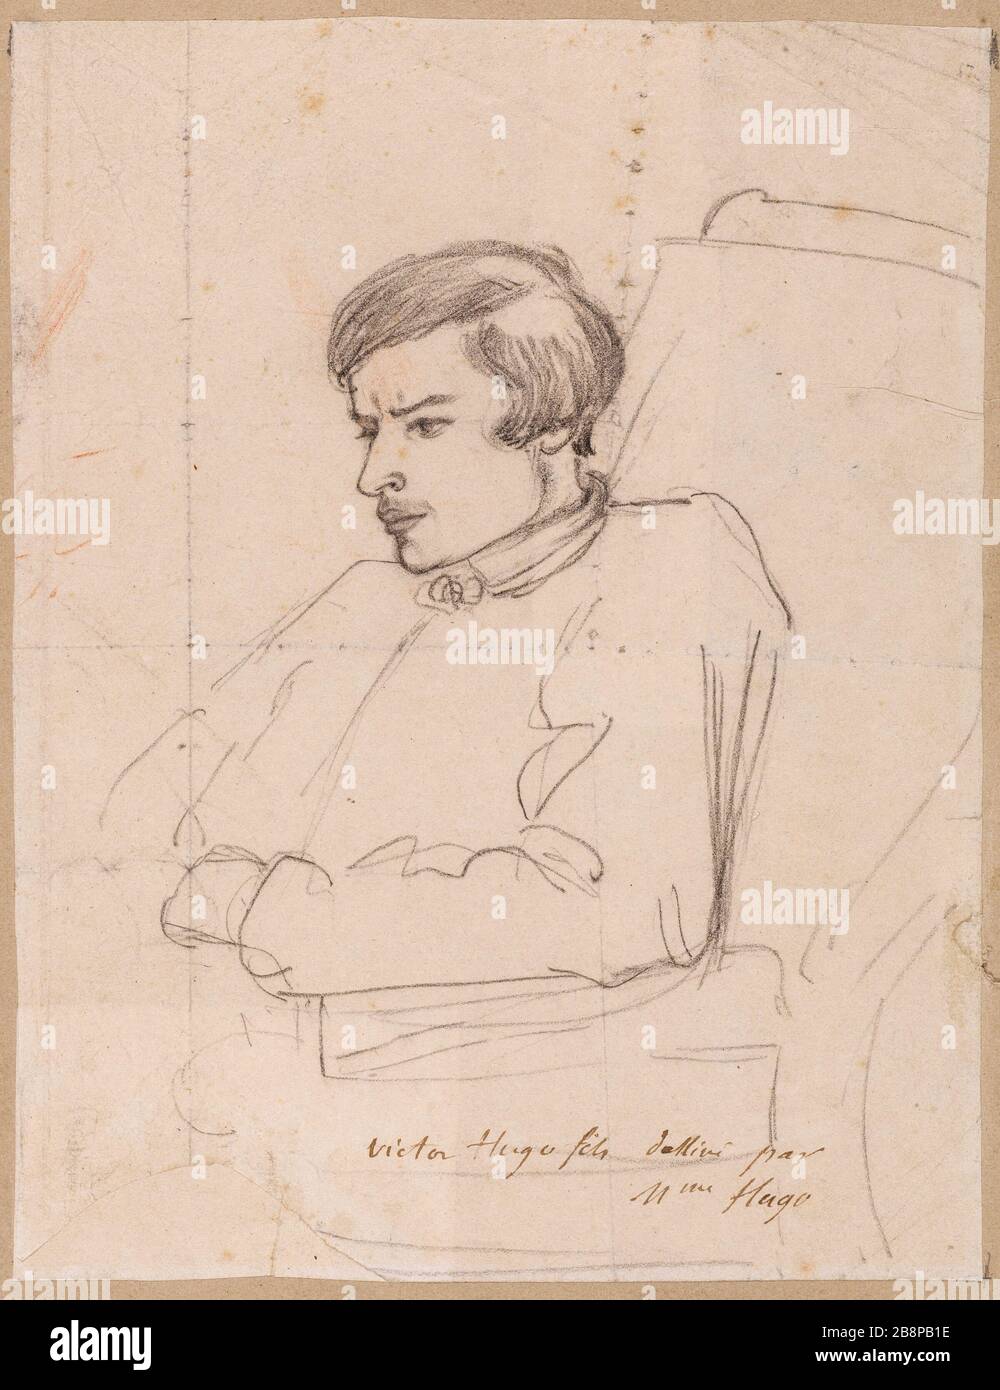 François-Victor Hugo's picture Adèle Hugo, née Foucher (1803-1868). Portrait de François-Victor Hugo. Crayon graphite sur papier. 2e quart du 19e siècle. Paris, Maison de Victor Hugo. Stock Photo